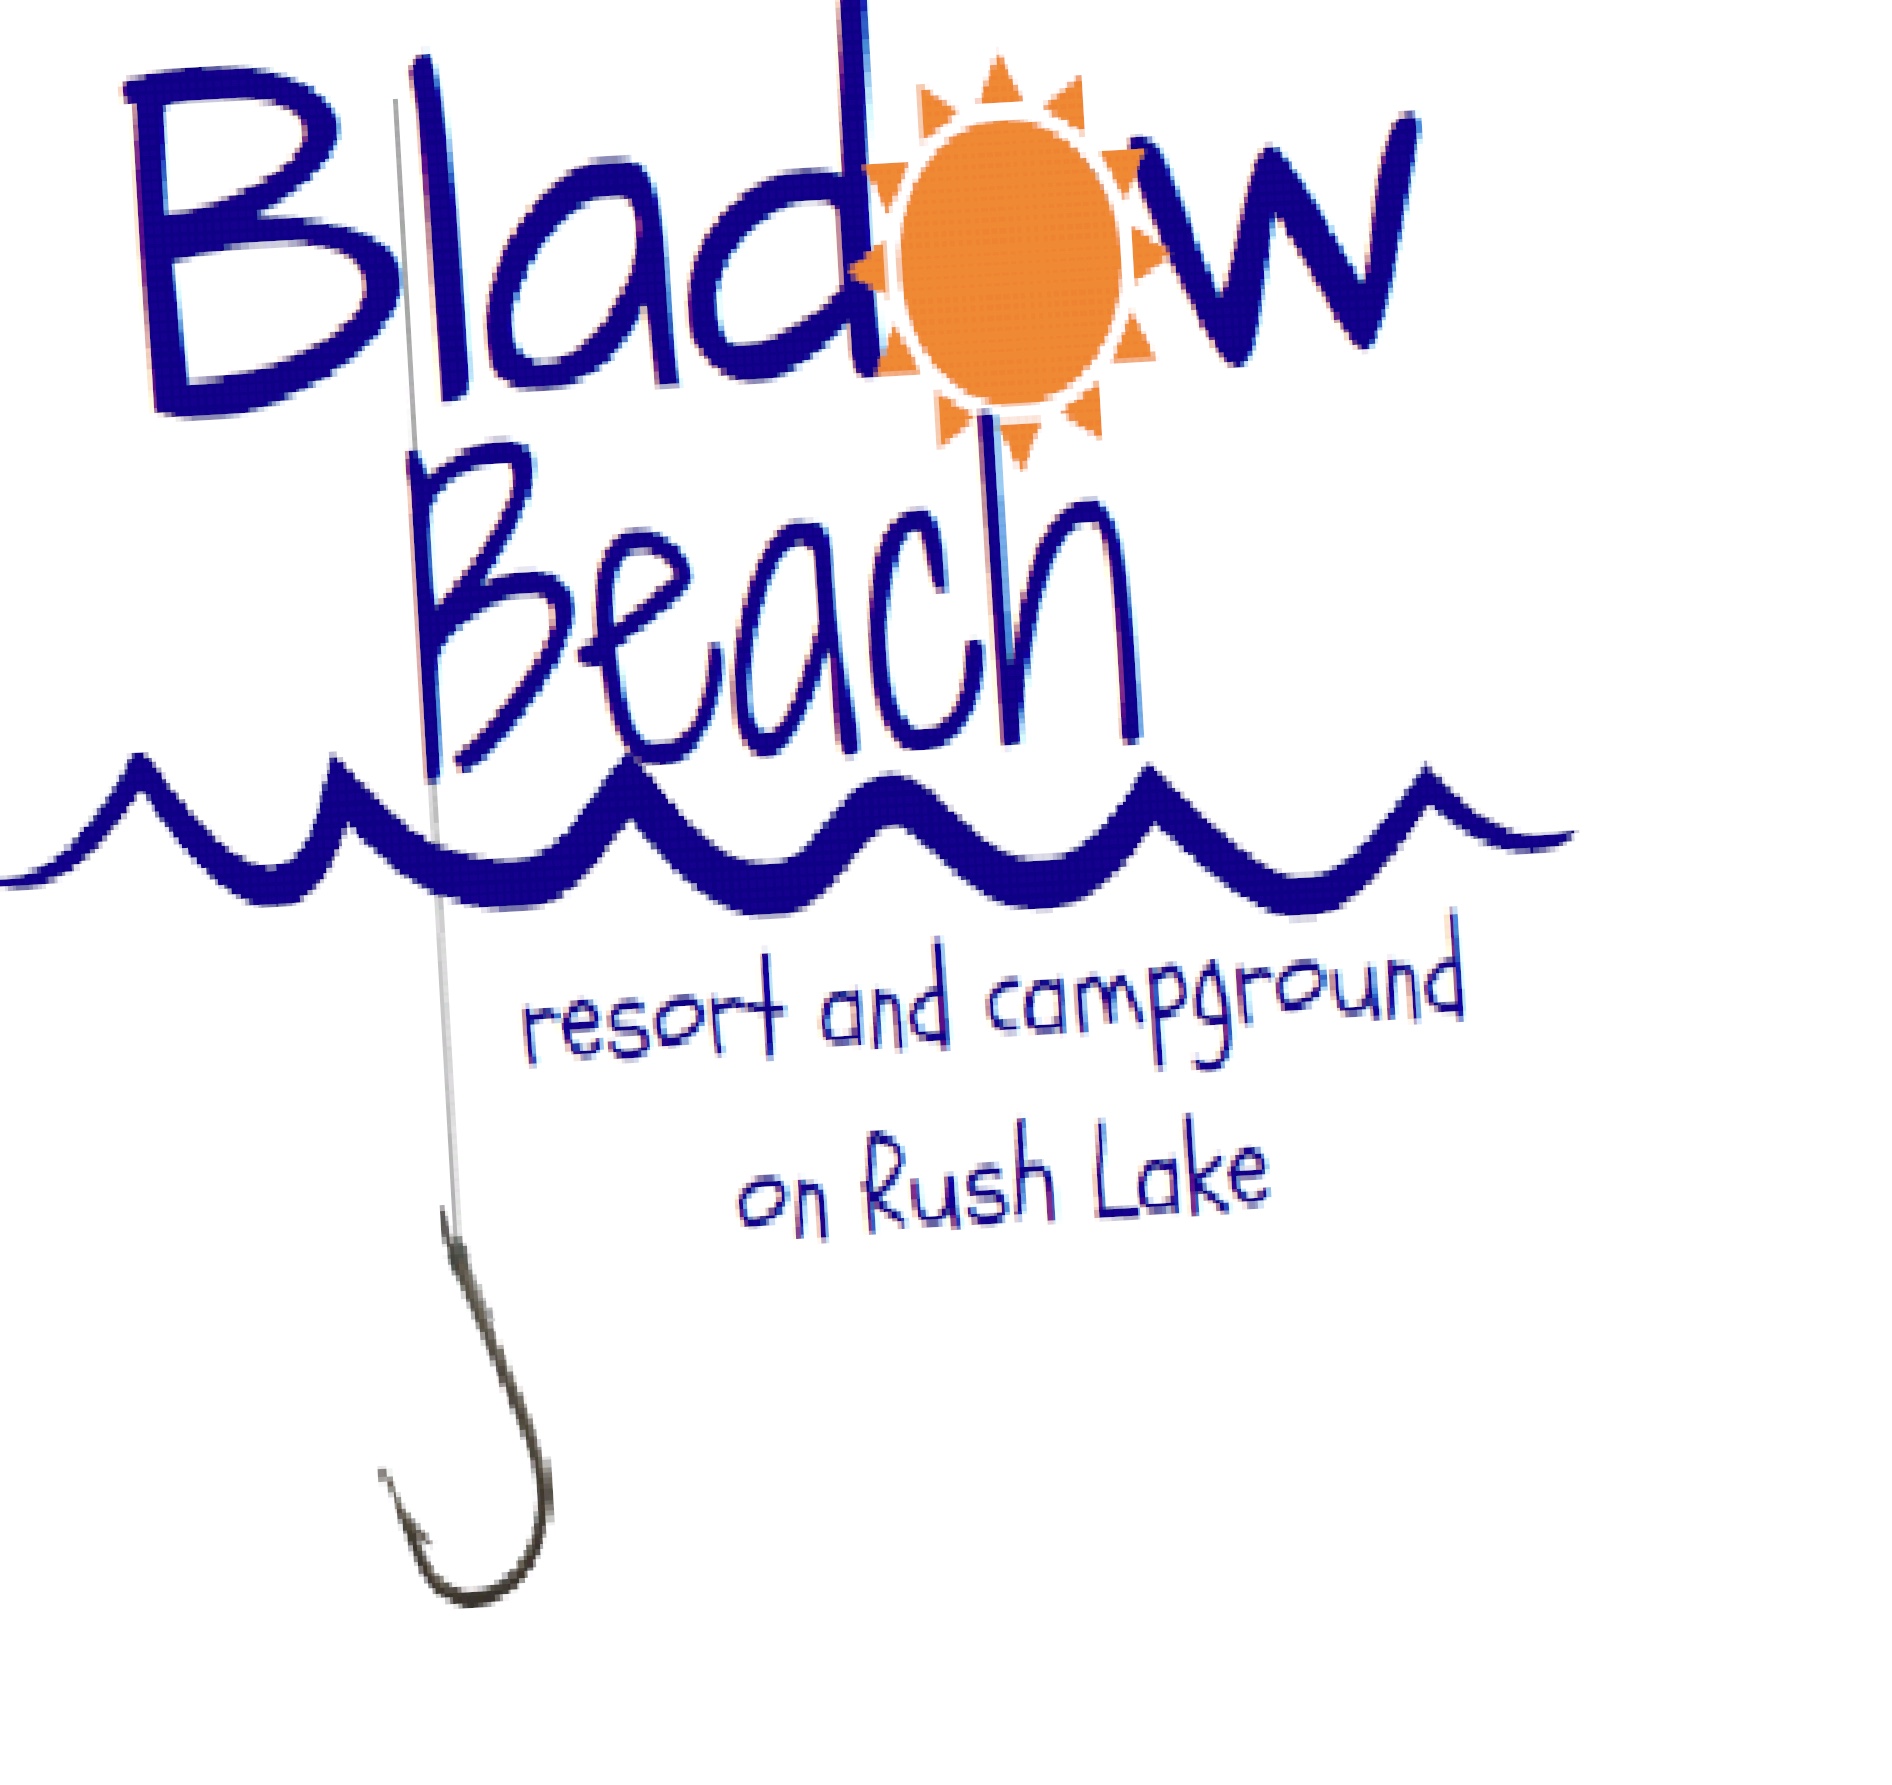 Bladow Beach Resort & Campground Logo